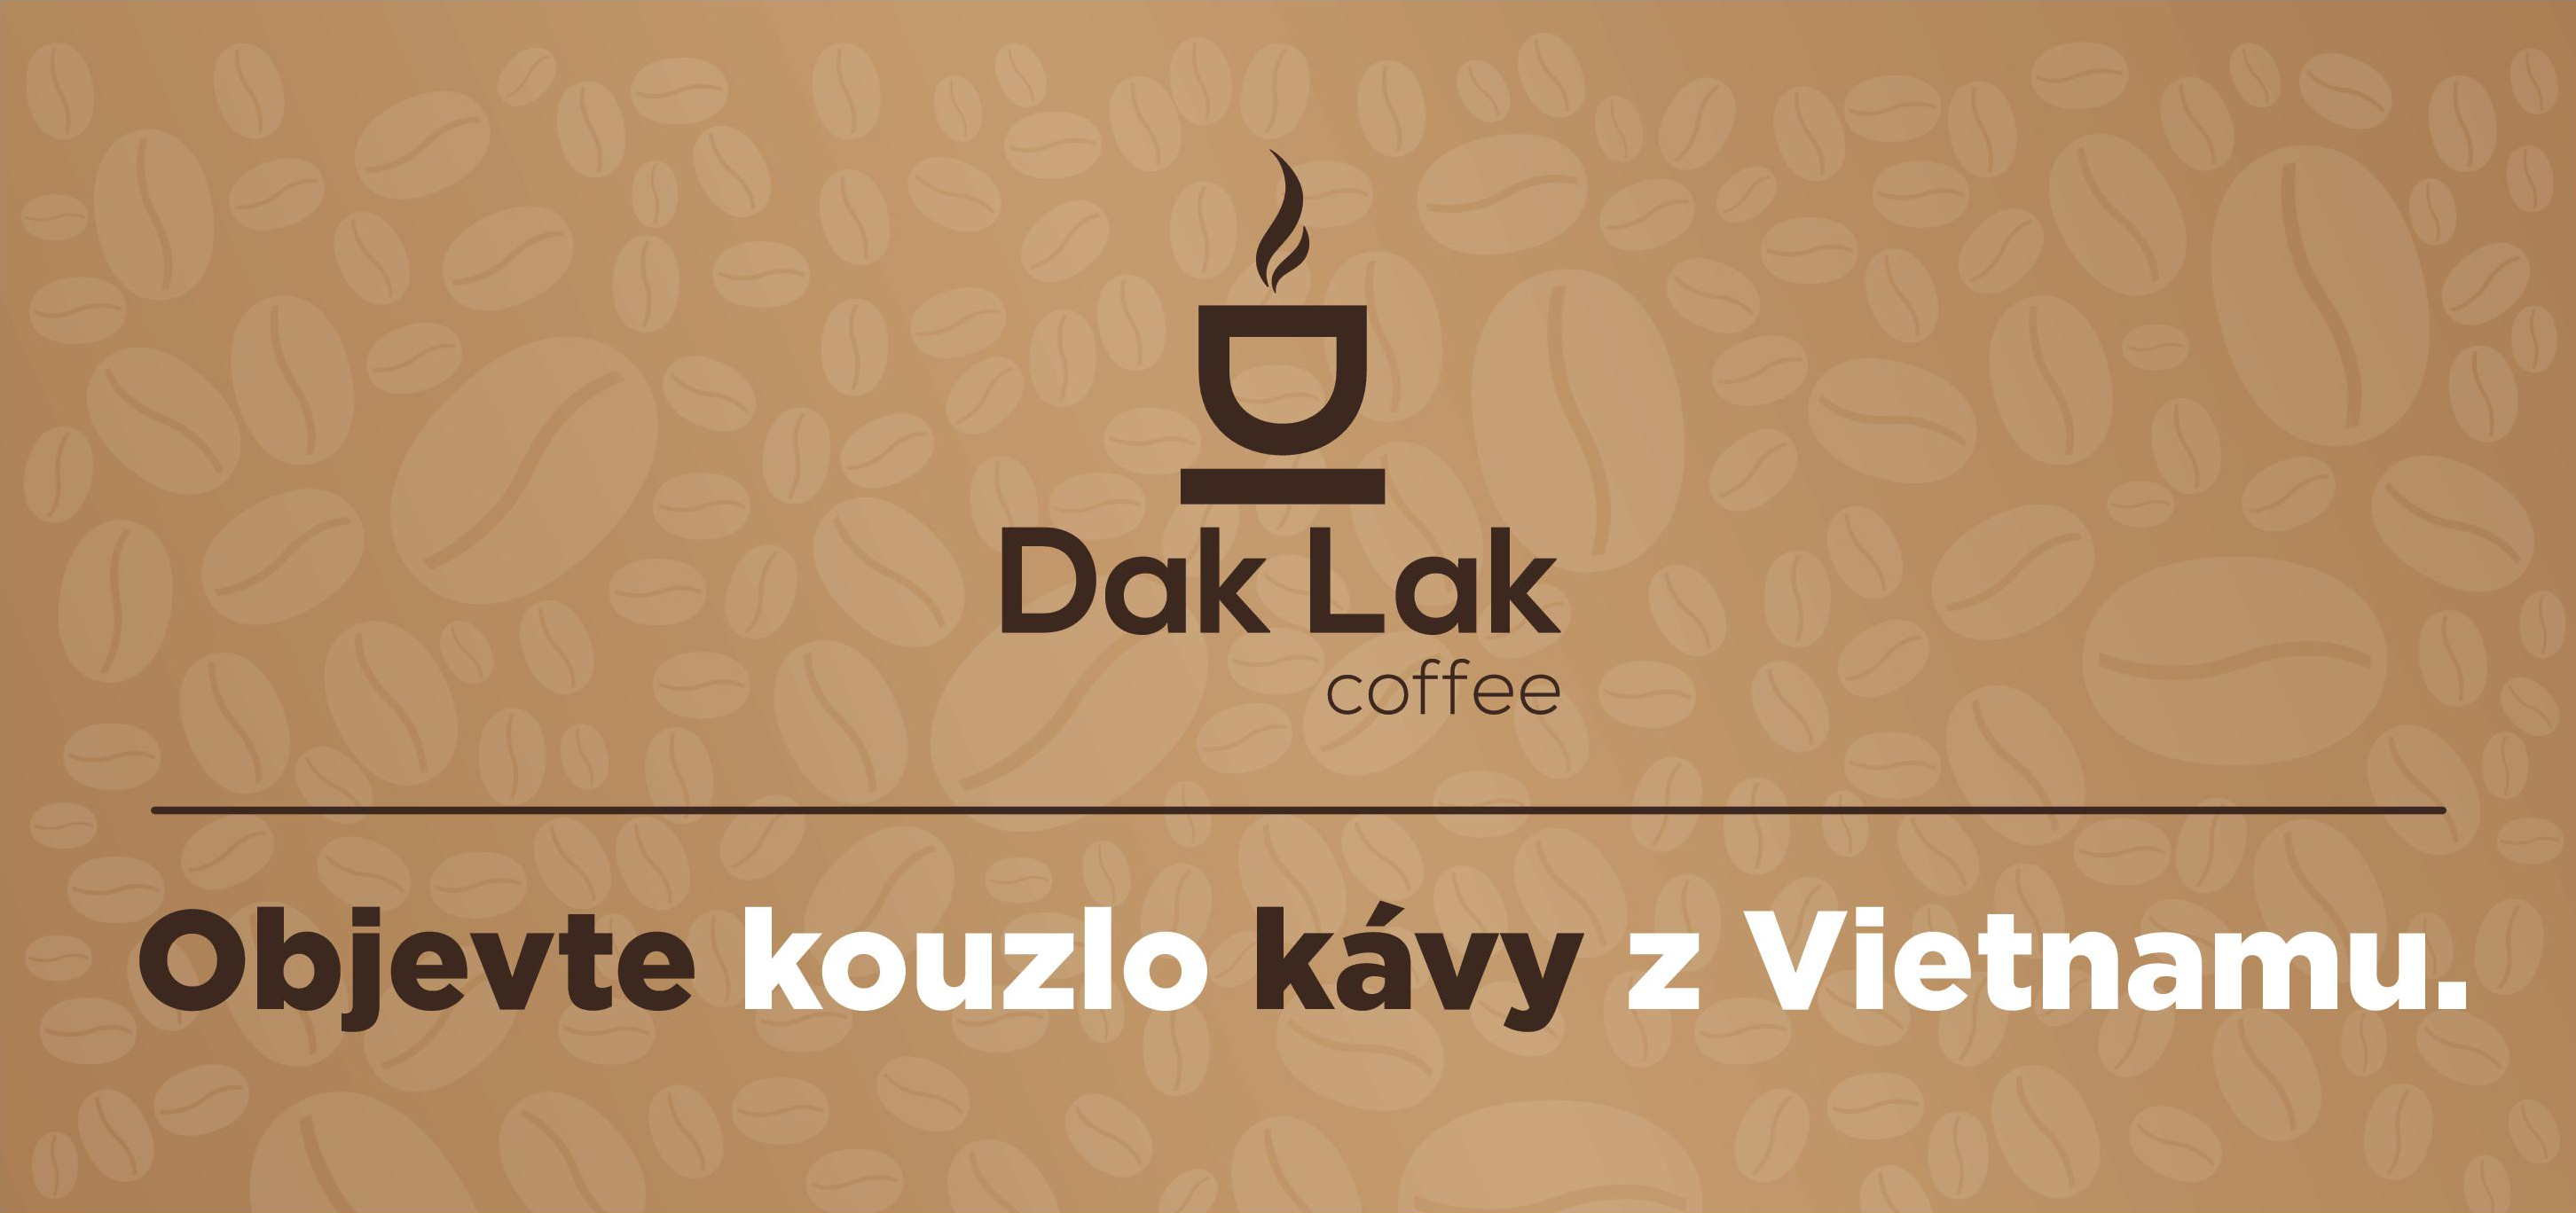 Dak Lak Coffee